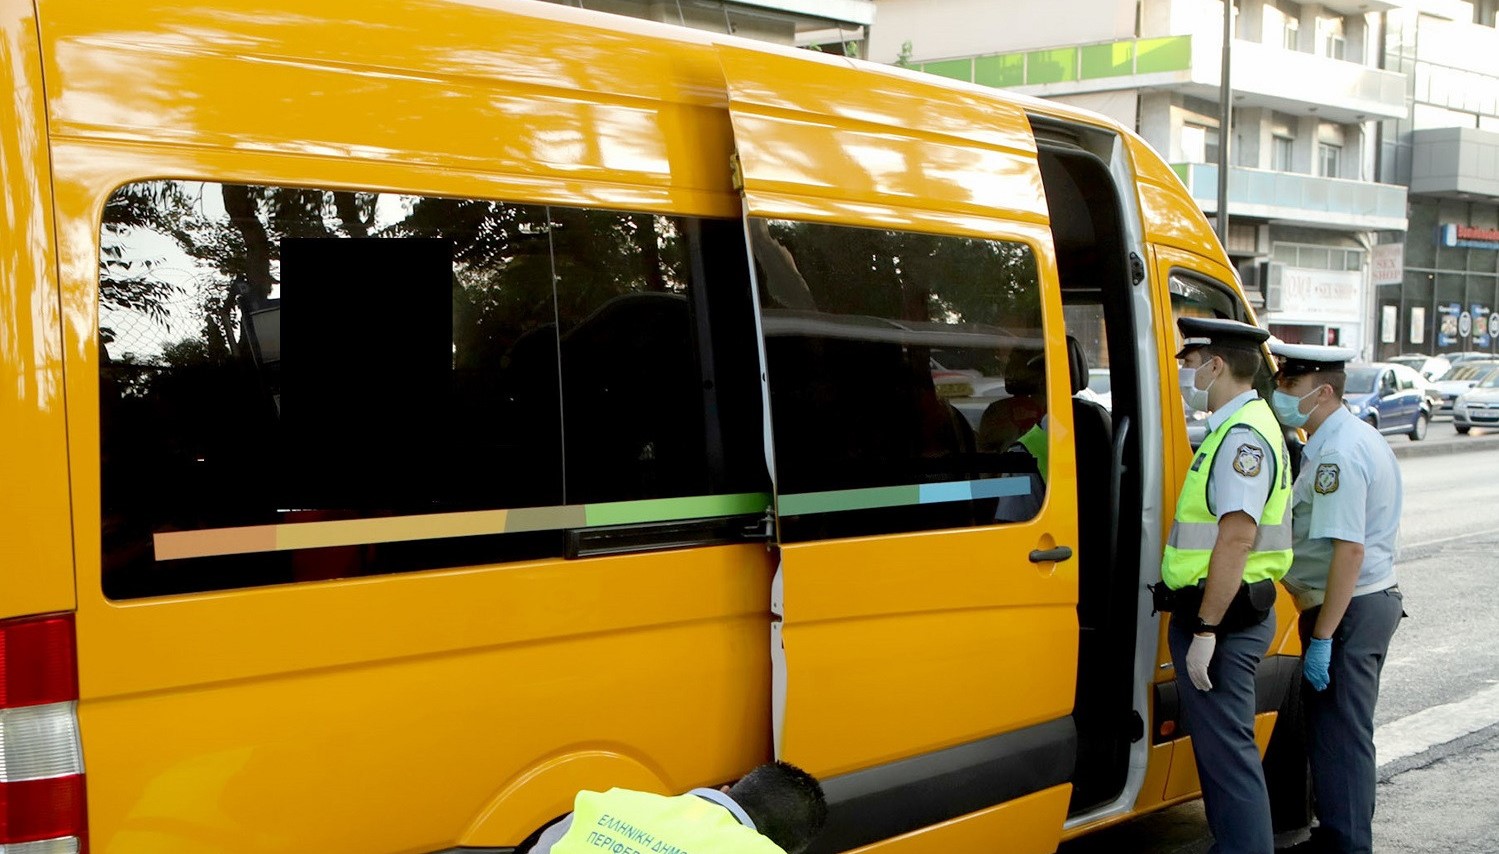 Τροχαία: Πάνω από 100 παραβάσεις σε ελέγχους σχολικών λεωφορείων στην Αττική